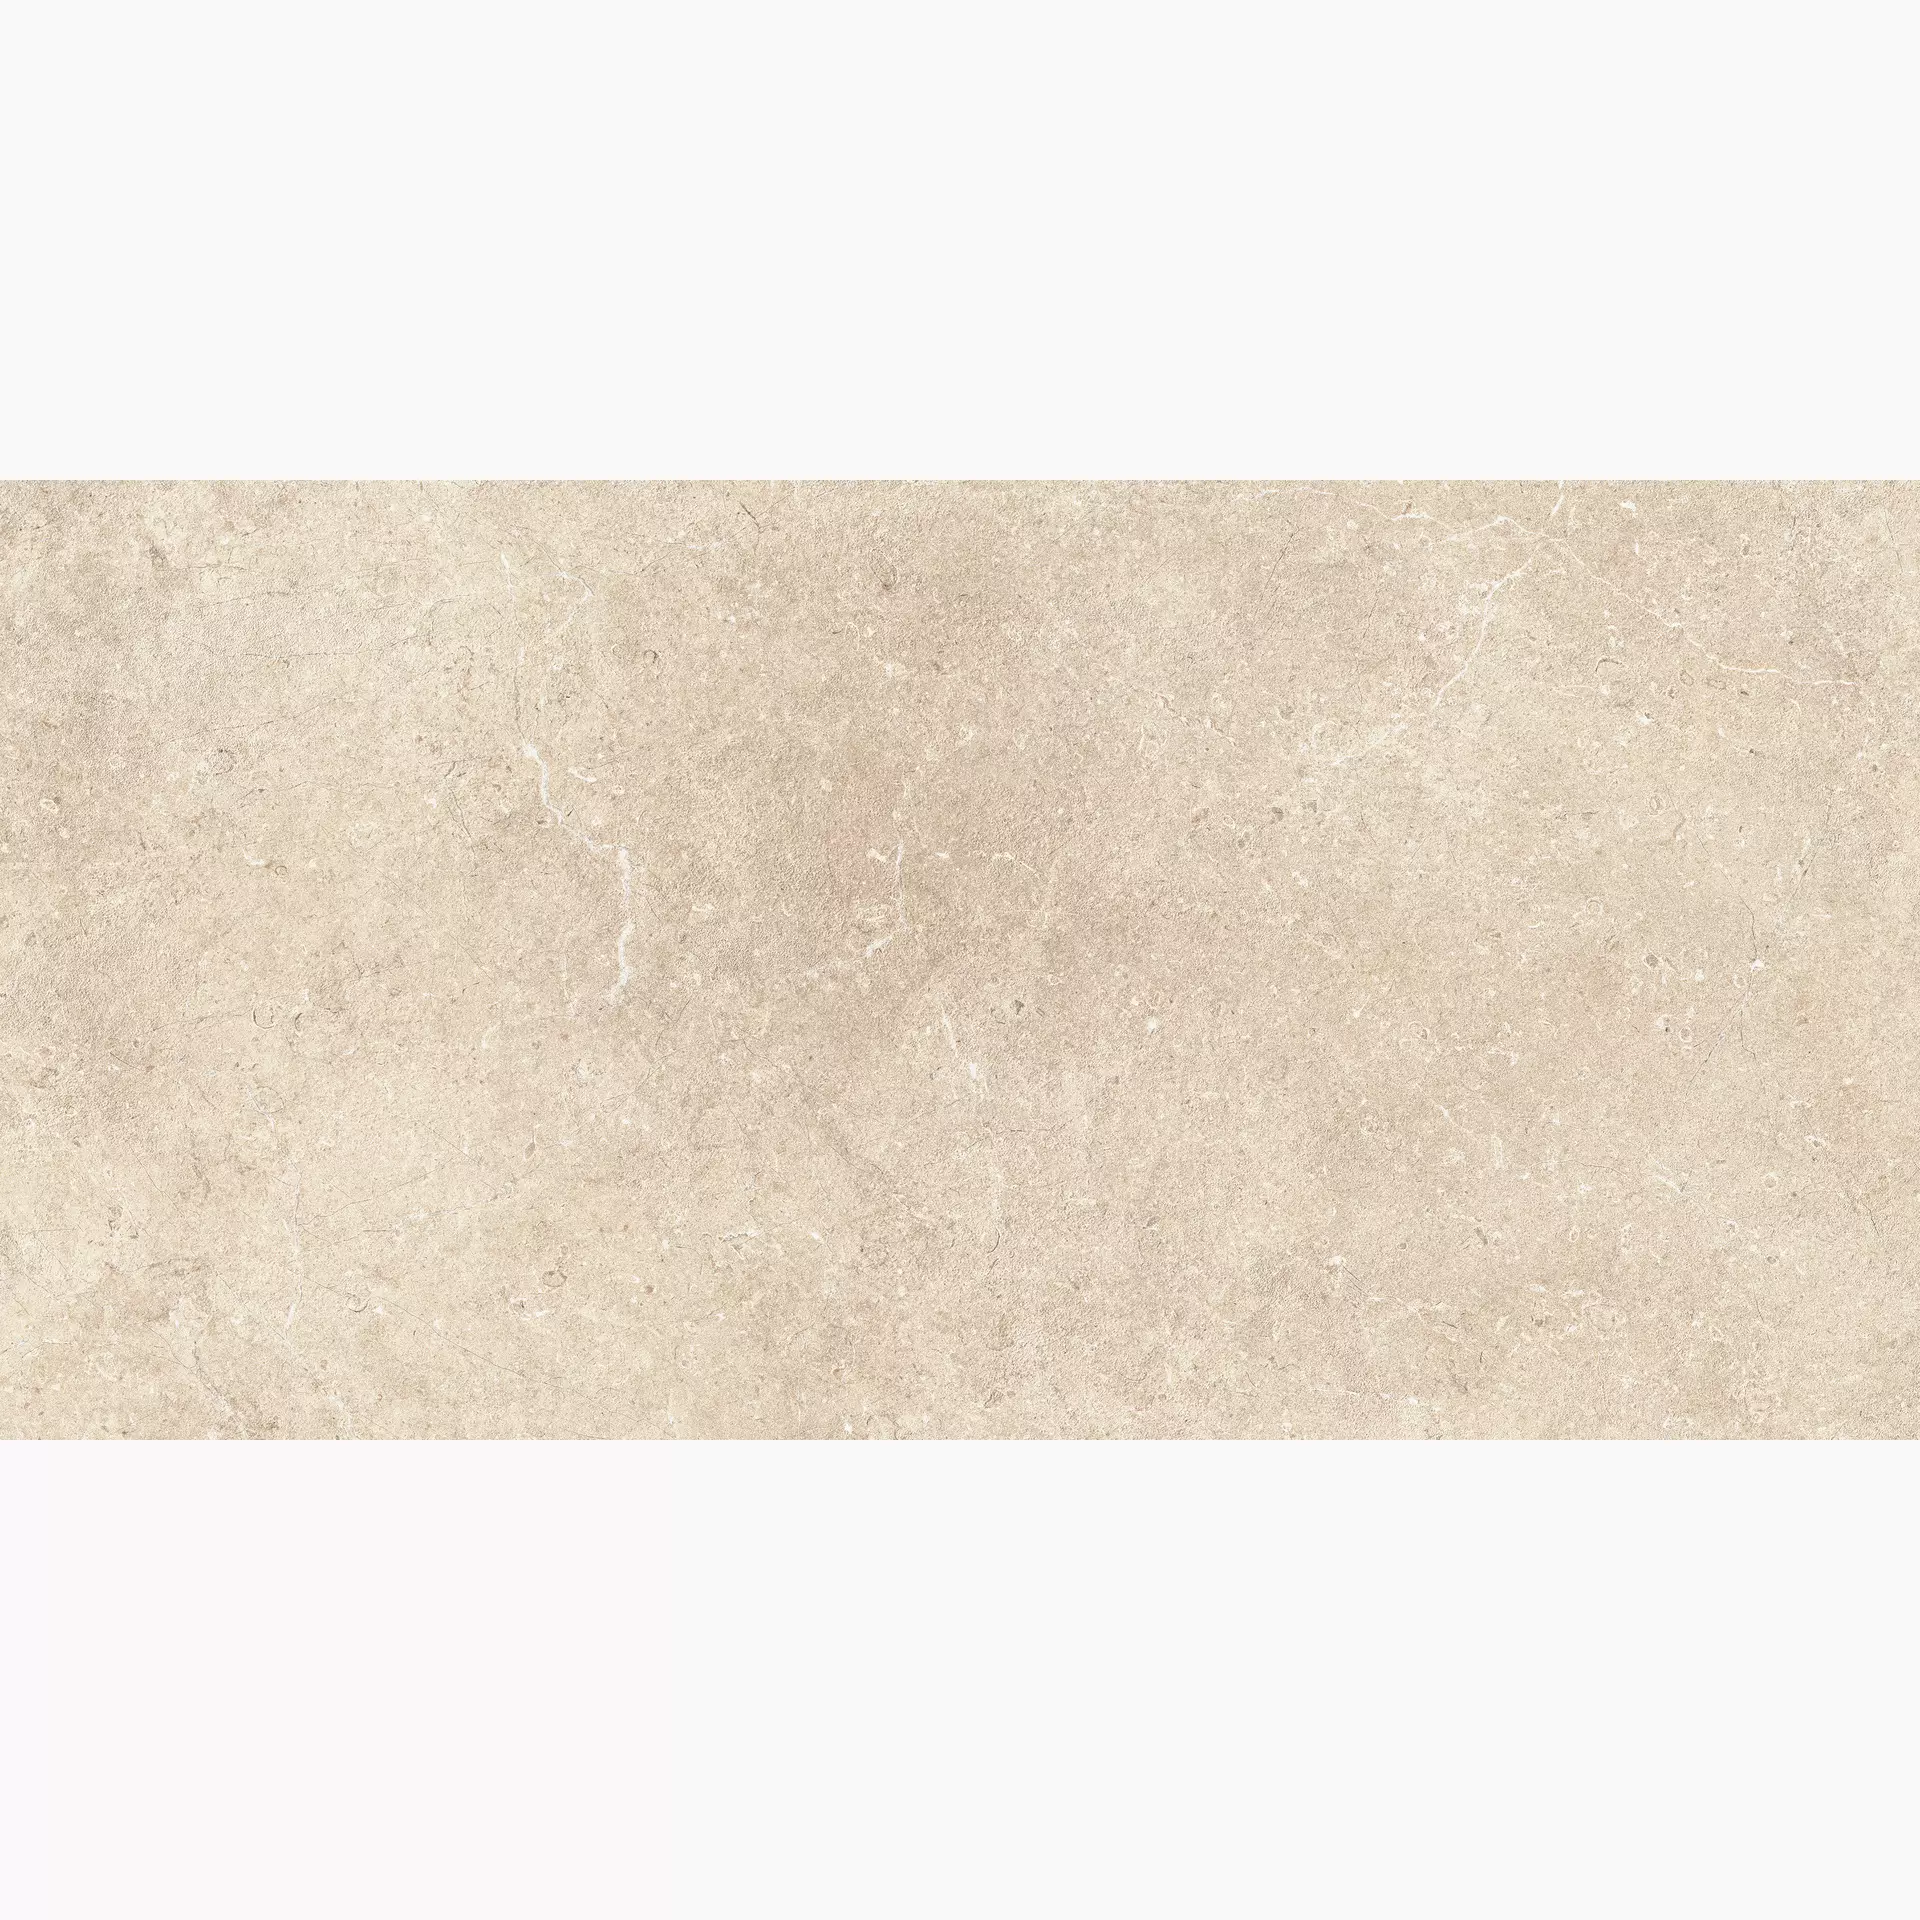 Bodenfliese,Wandfliese Marazzi Mystone Limestone Sand Naturale – Matt Sand M9HF matt natur 60x120cm rektifiziert 6mm